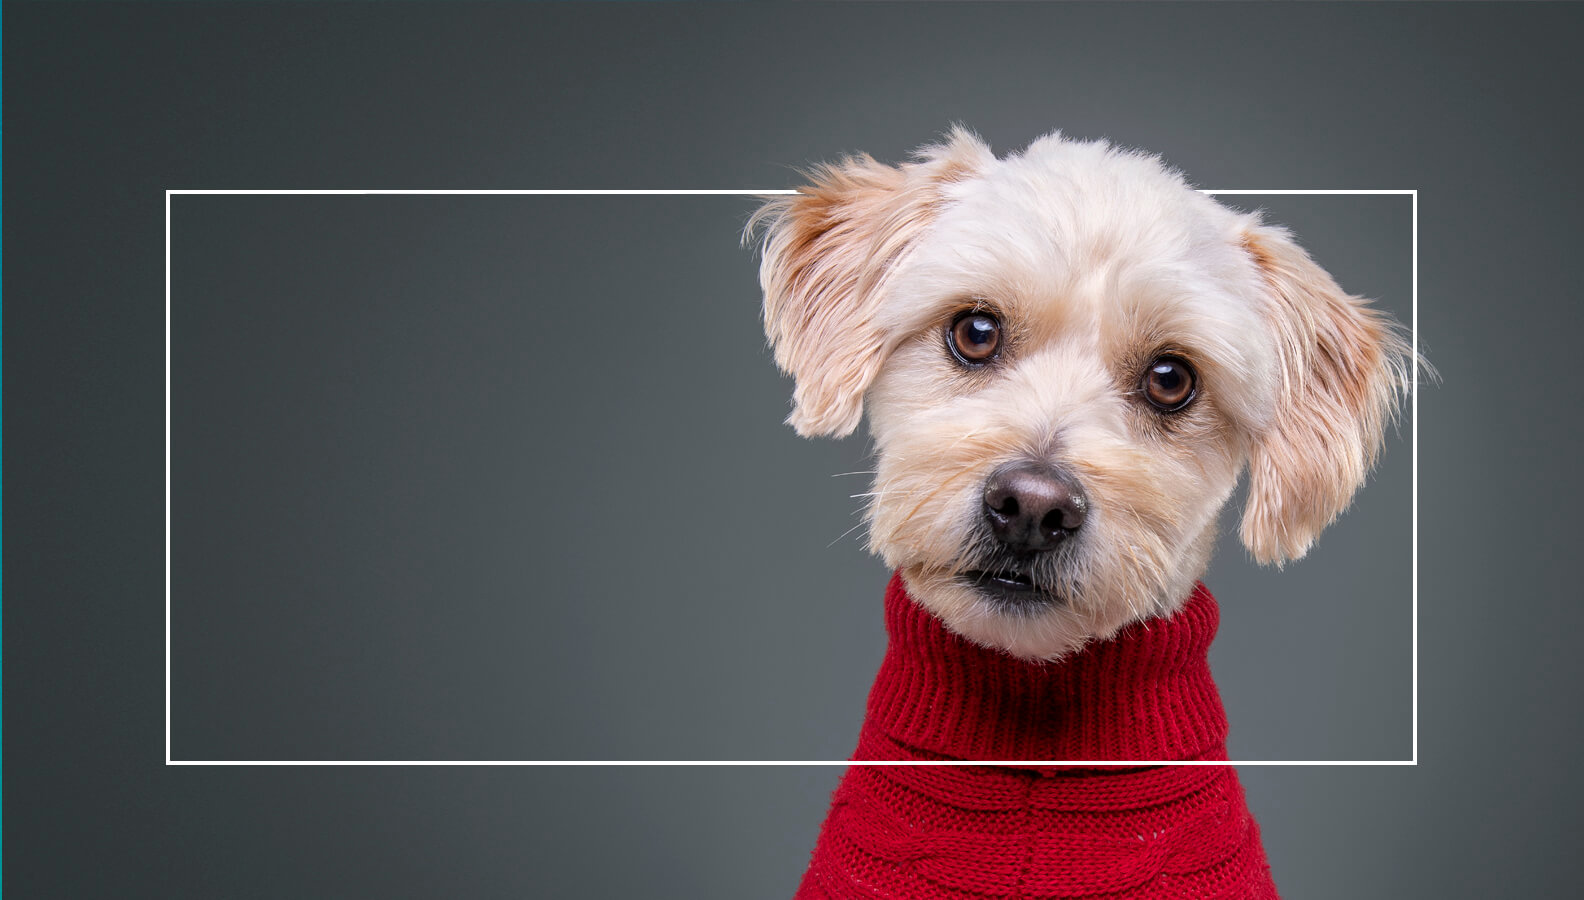 Super cute dog portrait wearing a red jumper